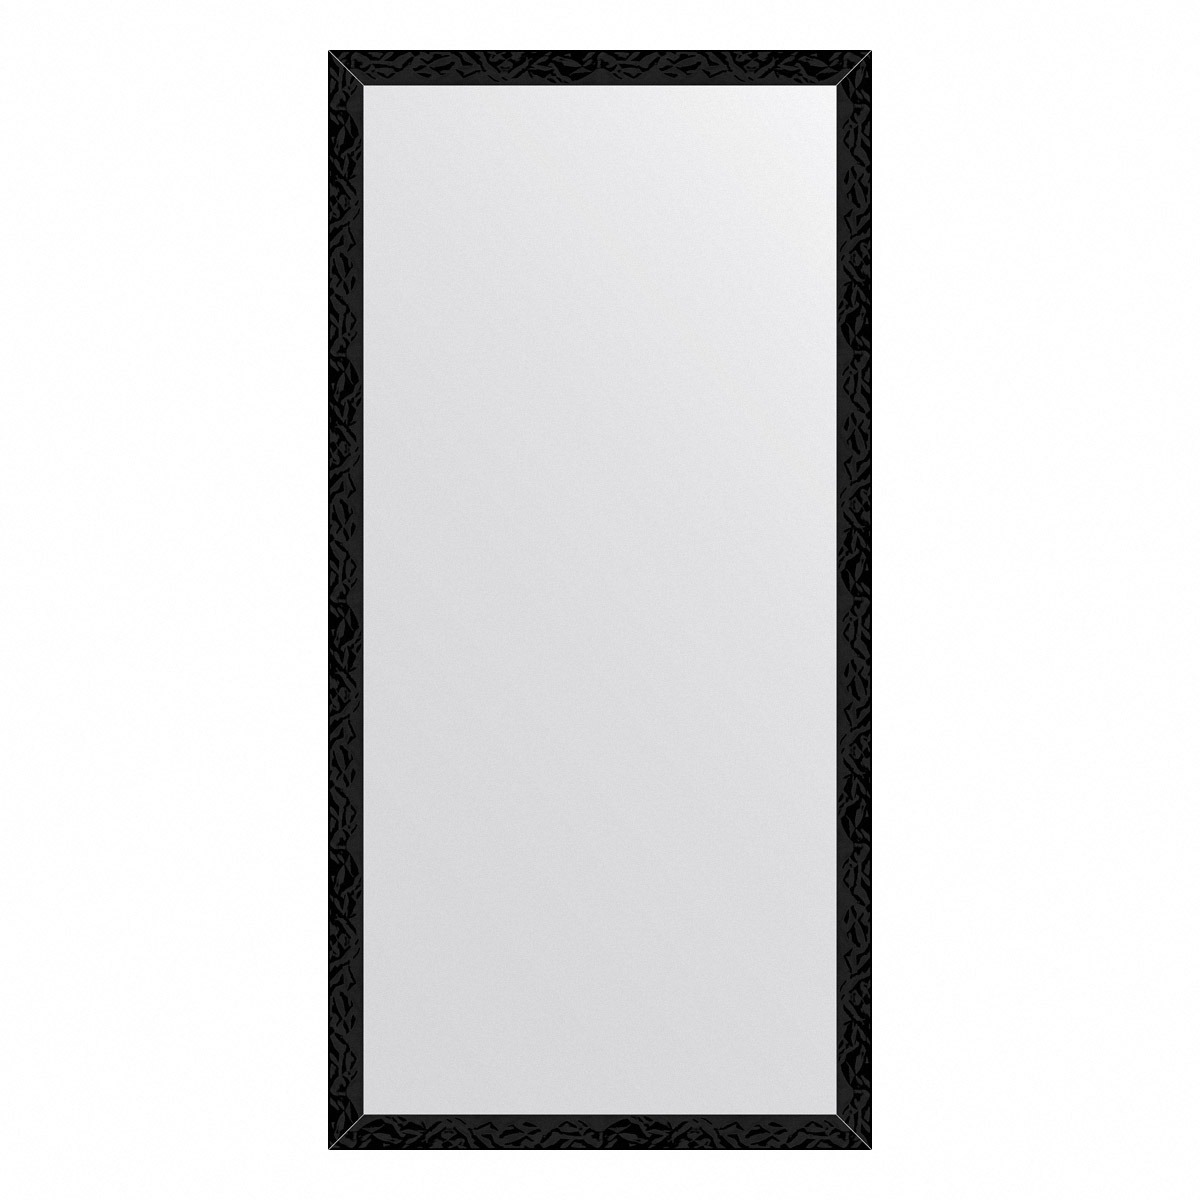 Зеркало в багетной раме Evoform черные дюны 32 мм 49х99 см зеркало в багетной раме evoform definite чёрные дюны 49х99 см bx 7482